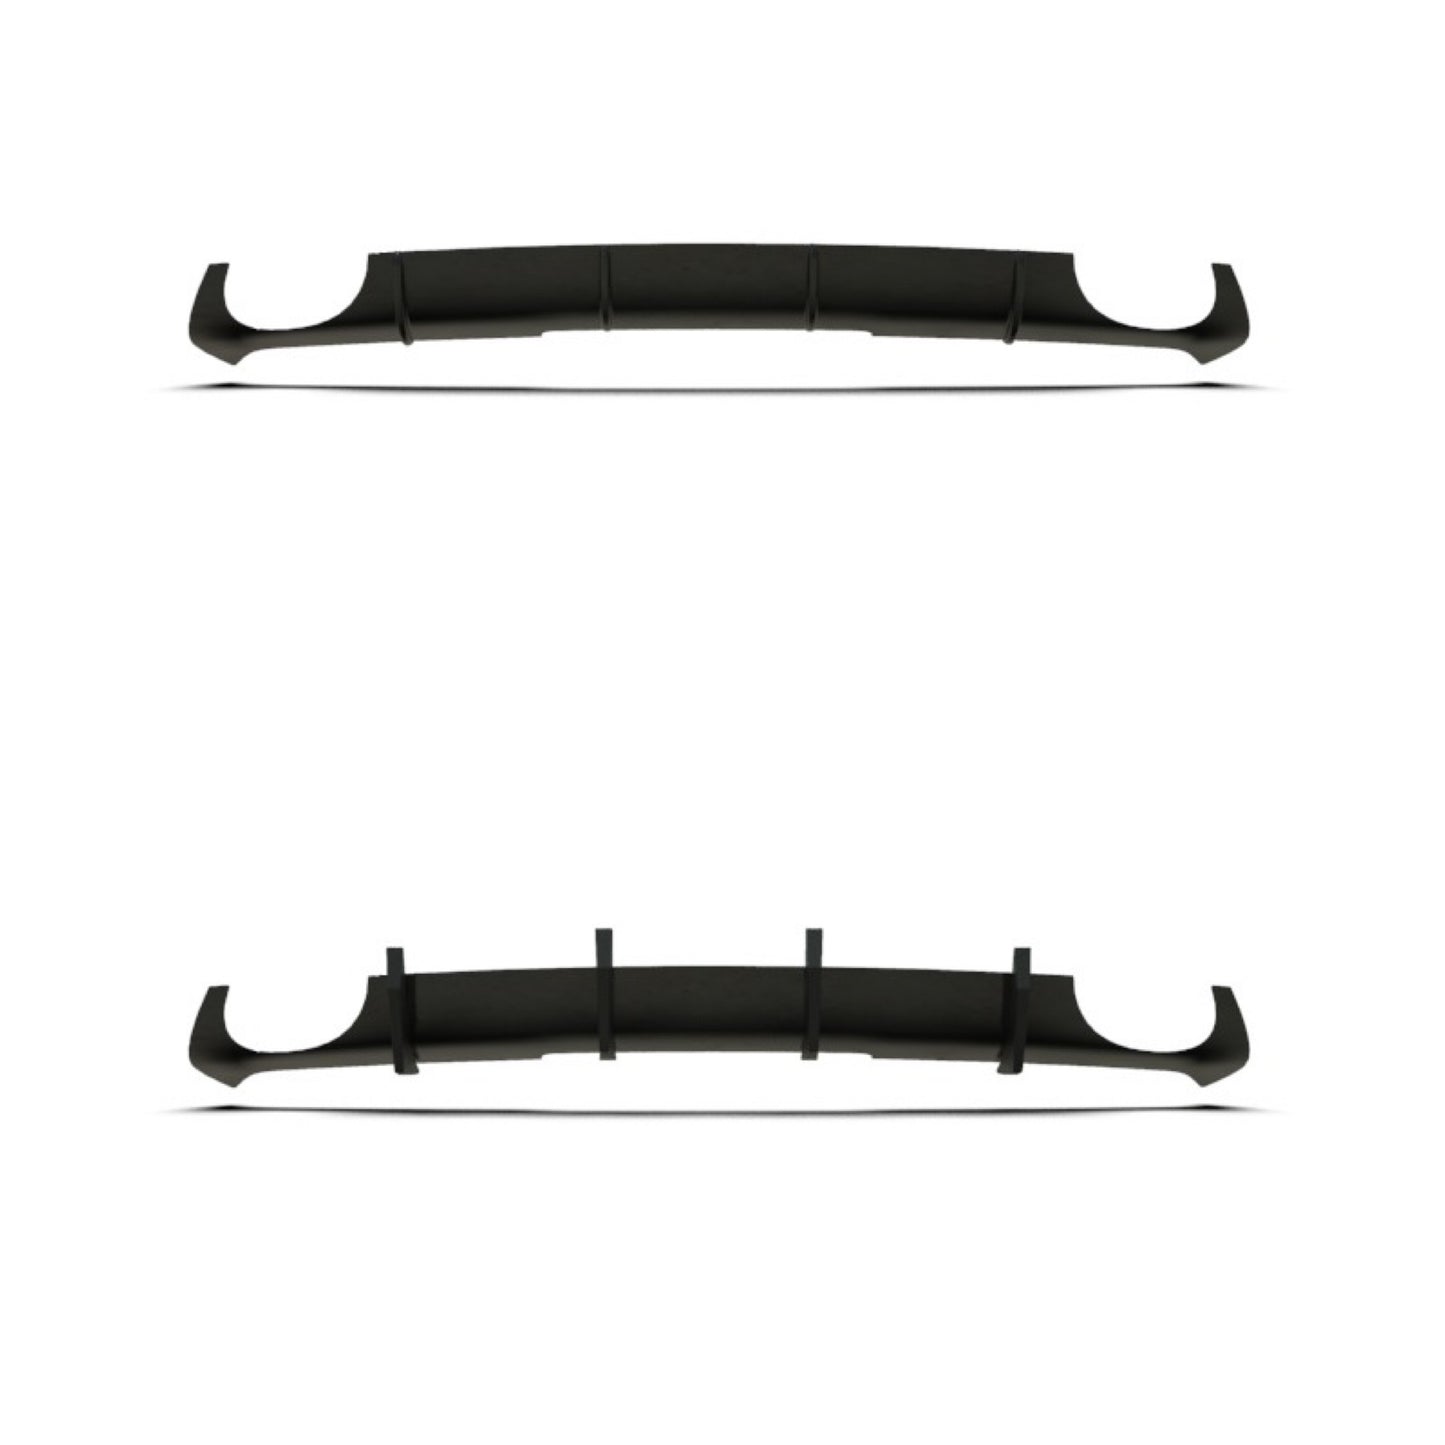 AUDI RS4 (2012-2015) B8/B8.5 Rear Diffuser Bumper Extensions